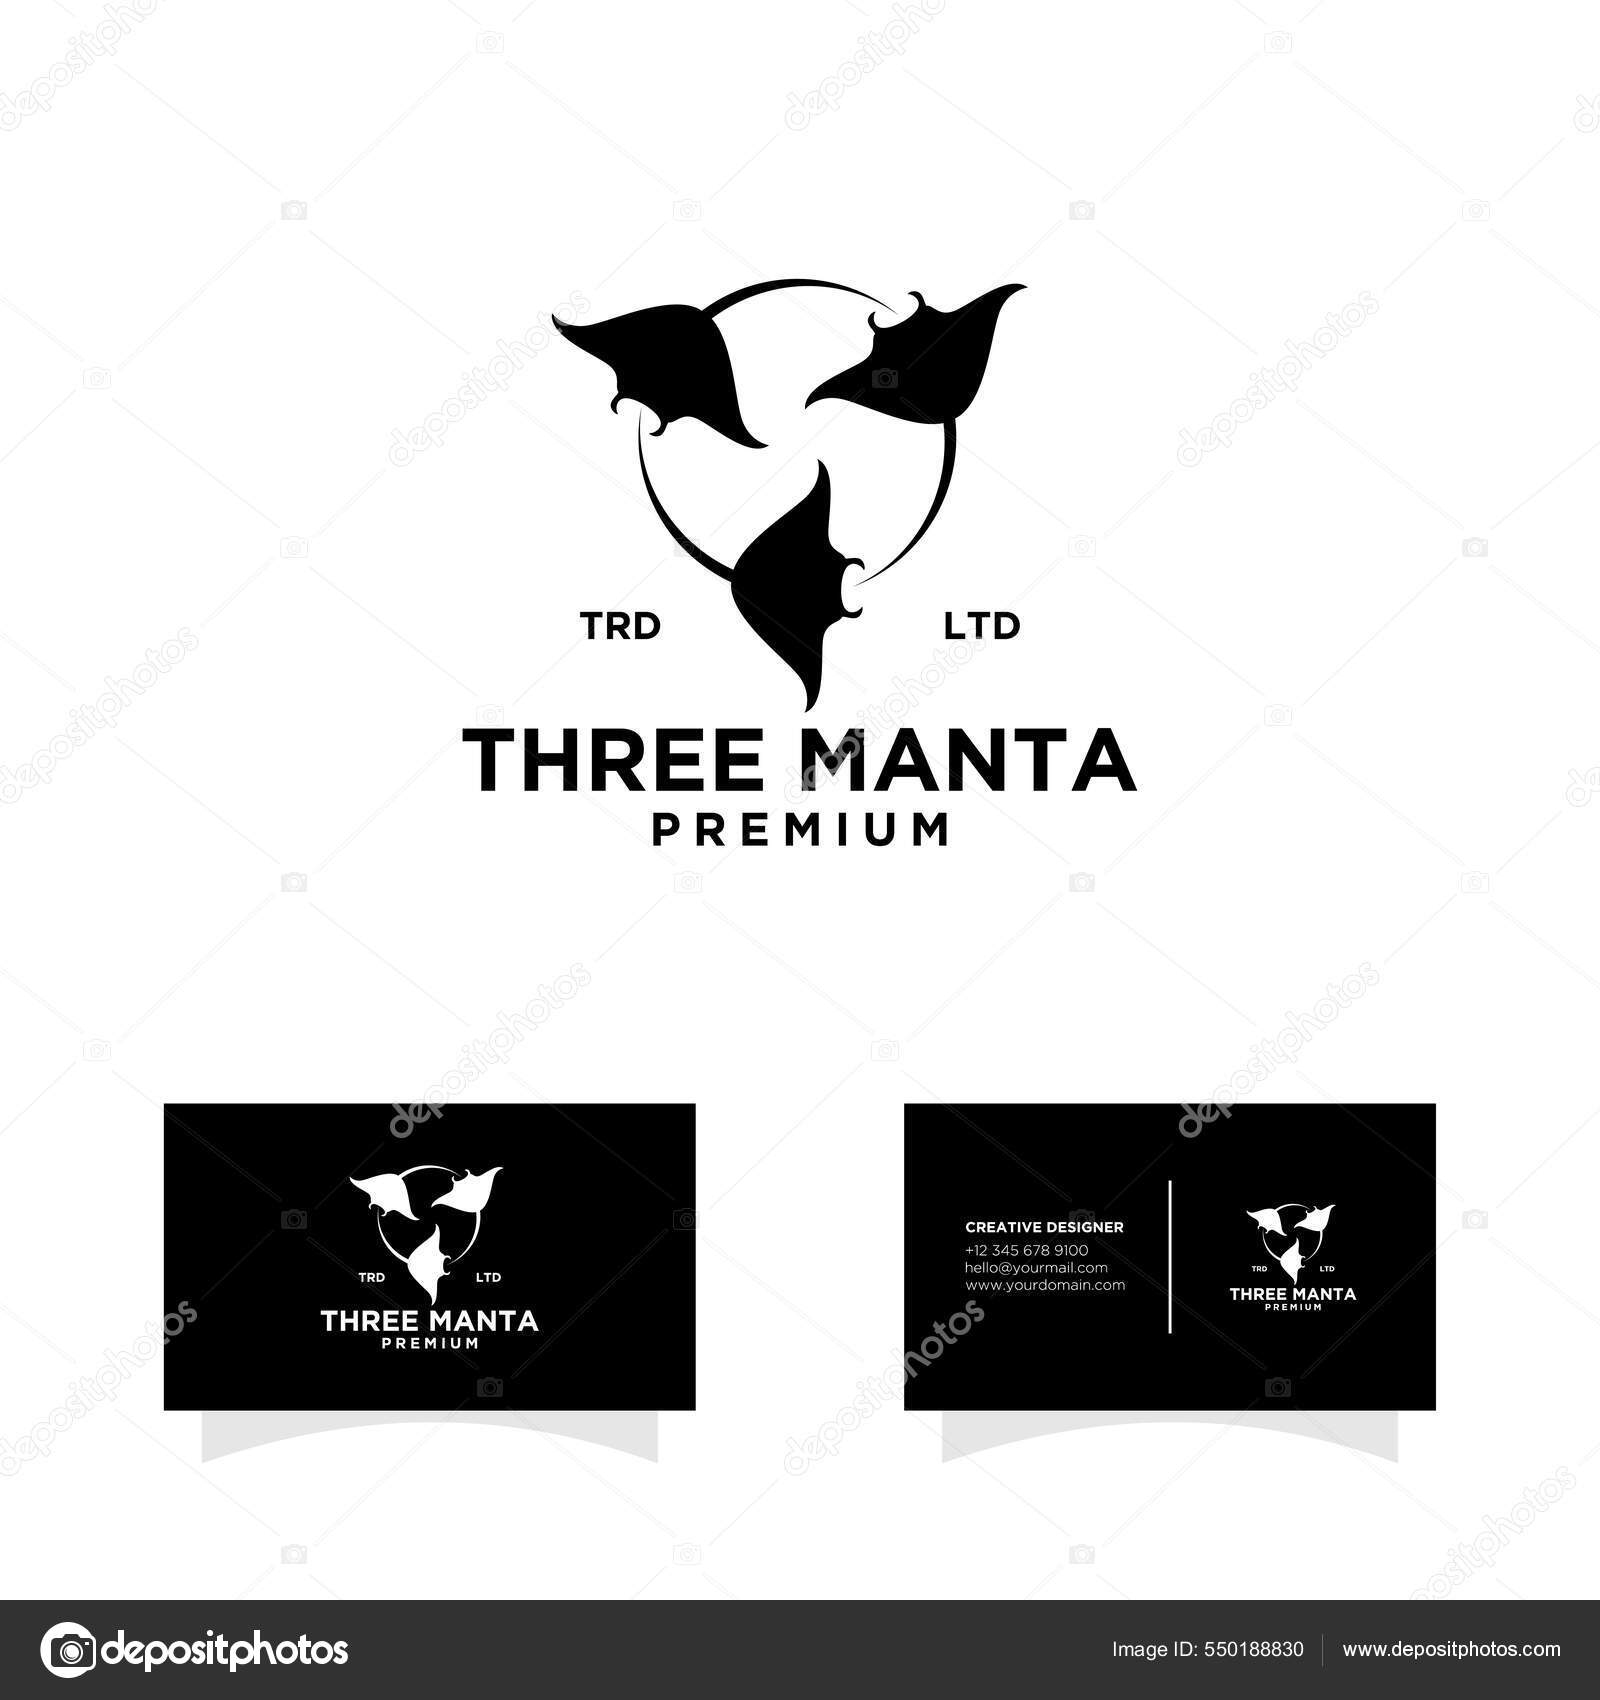 Manta Ray Logoストックベクター ロイヤリティフリーmanta Ray Logoイラスト ページ 2 Depositphotos